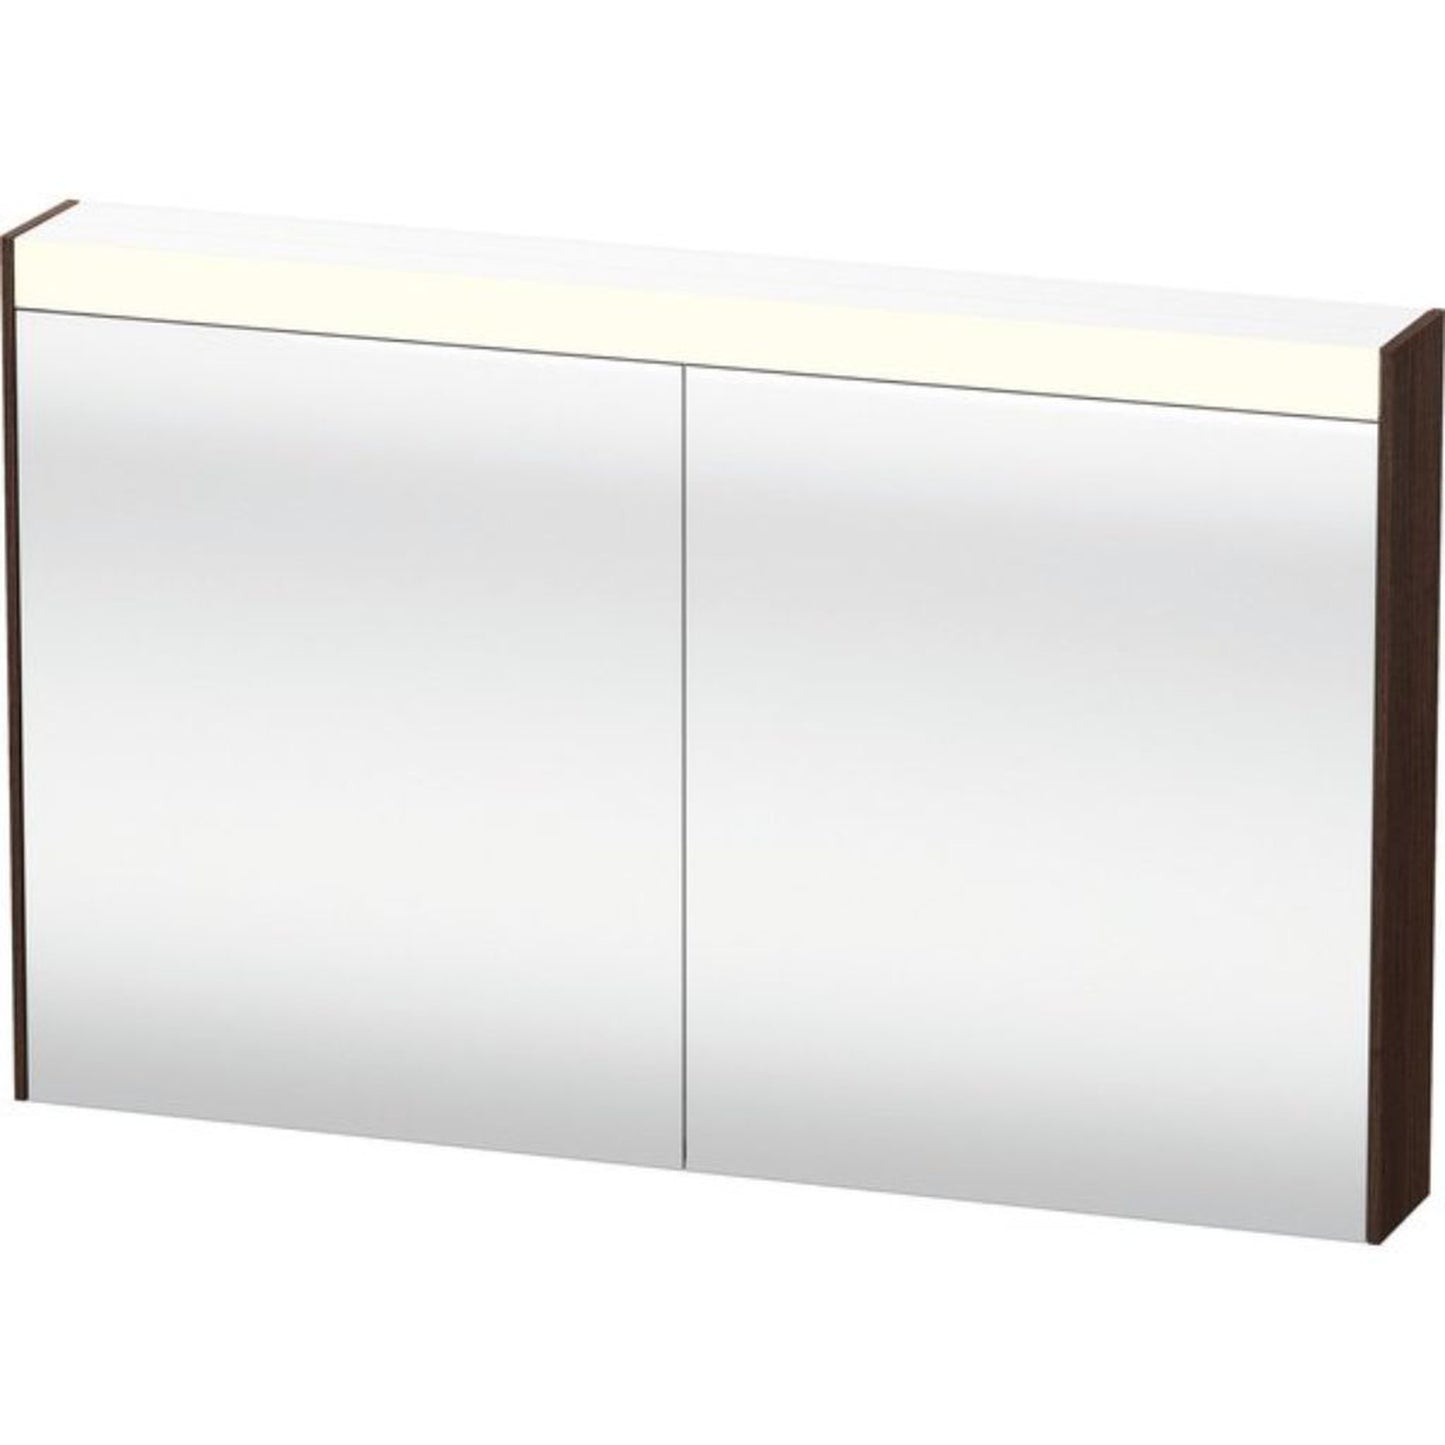 Duravit Brioso 48" x 30" x 6" Mirror Cabinet With Lighting Chestnut Dark